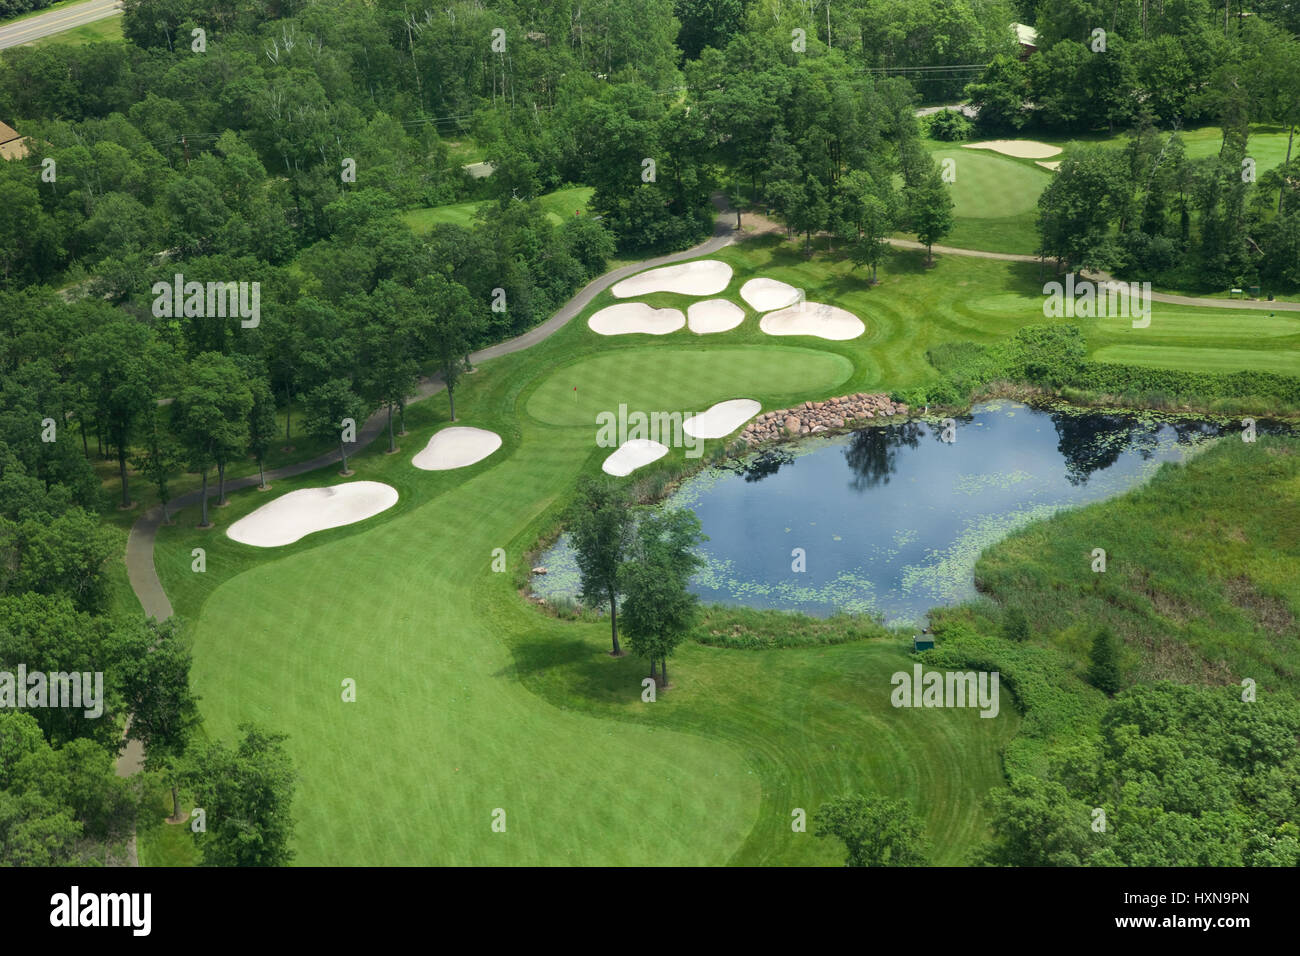 Vue aérienne de golf fairway et green avec les fosses de sable, étang et arbres Banque D'Images